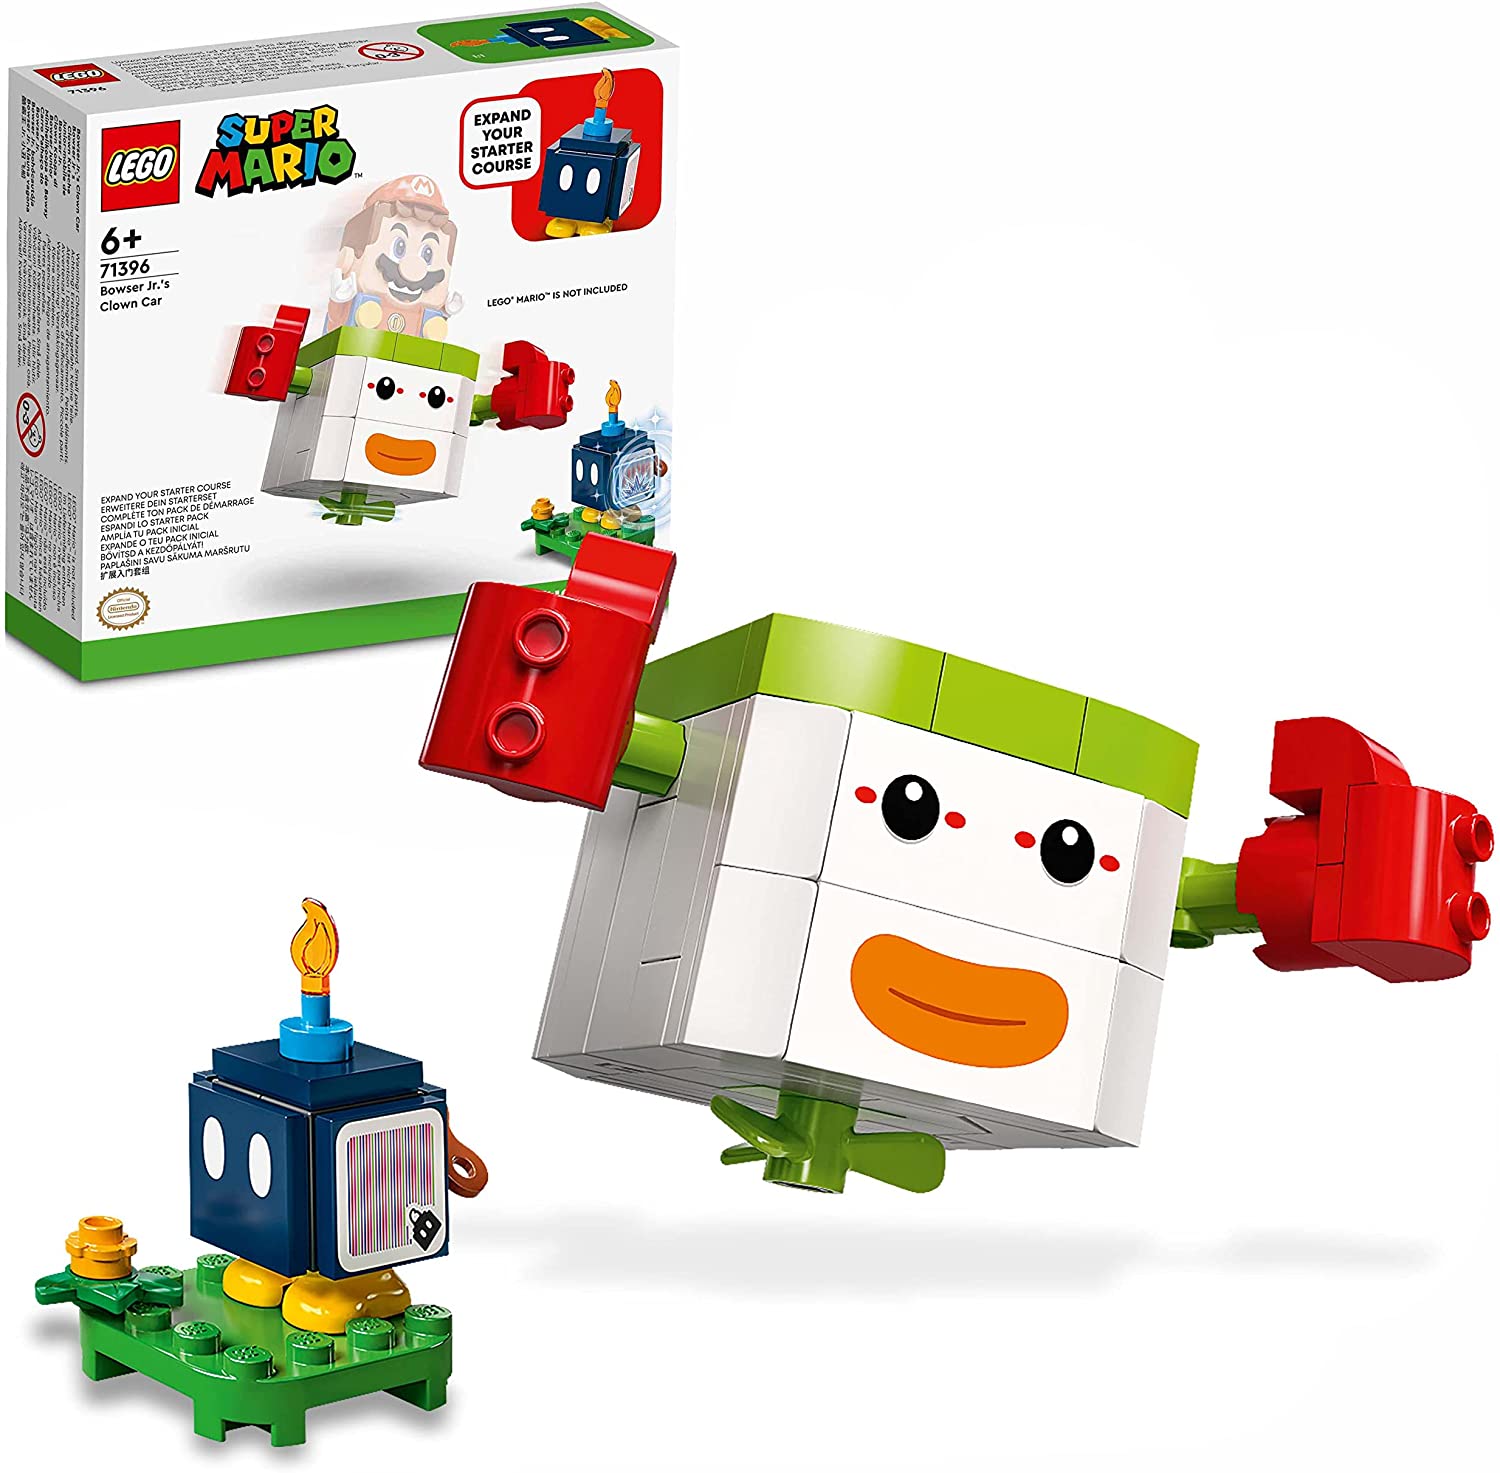 LEGO 71396 Super Mario Bowser Jr.‘s Clown Kutsche – Erweiterungsset, Set mi